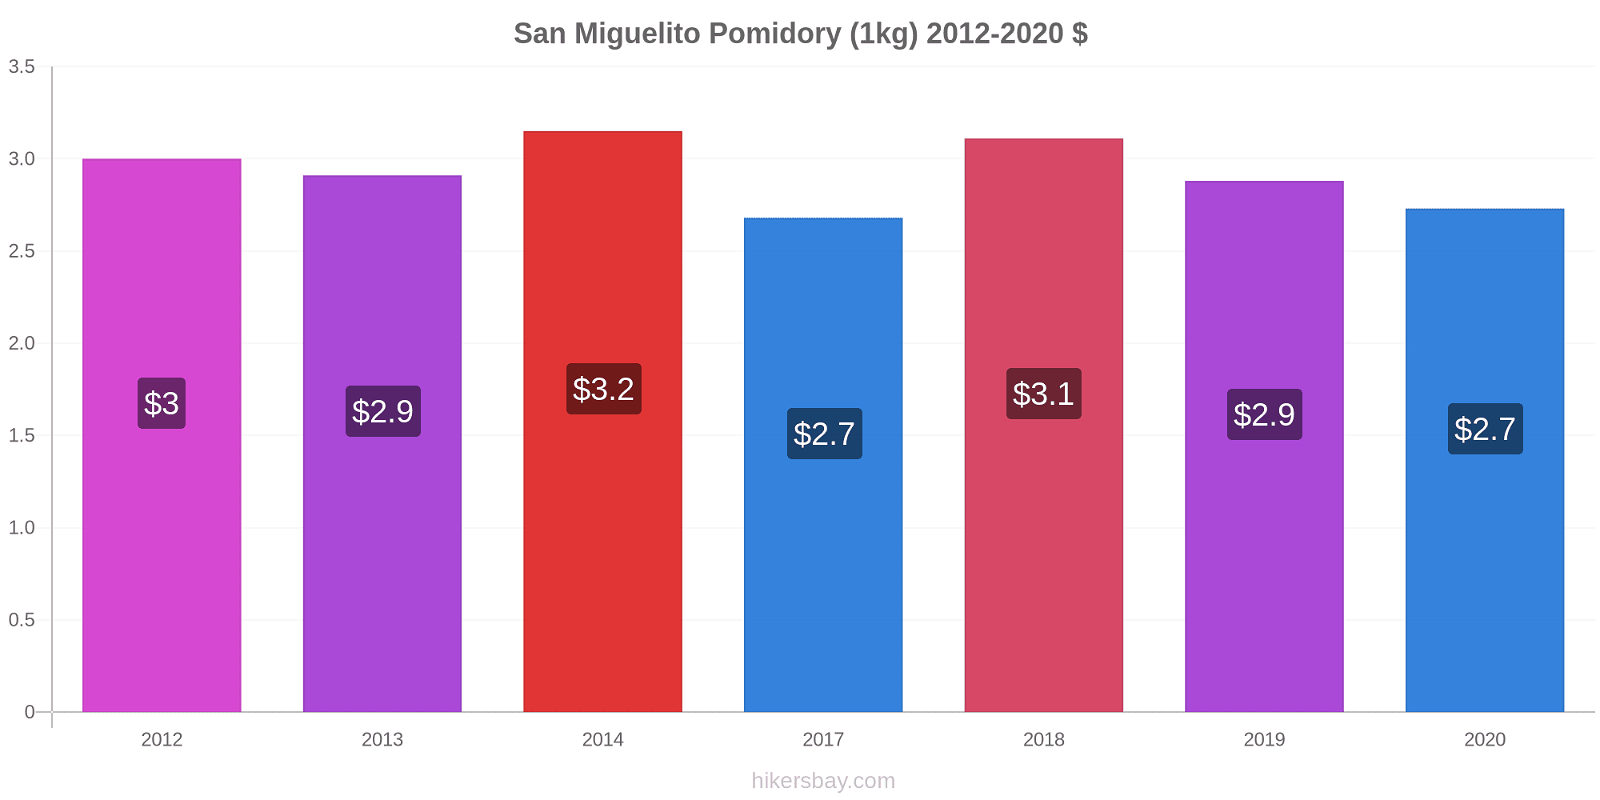 San Miguelito zmiany cen Pomidory (1kg) hikersbay.com